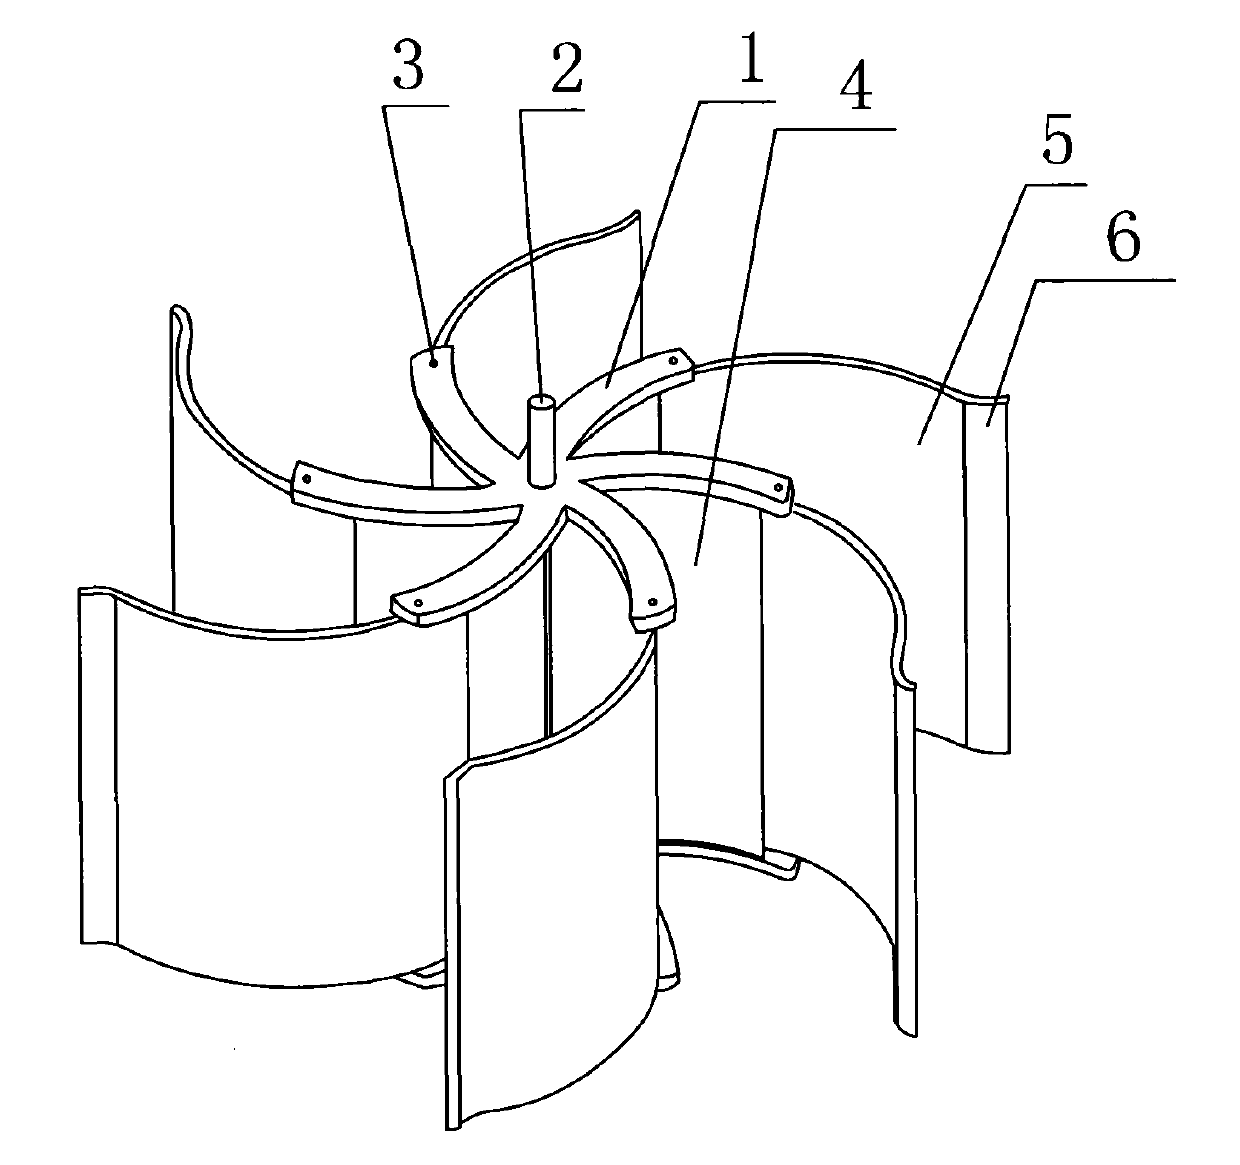 Fan blade mechanism of wind driven generator